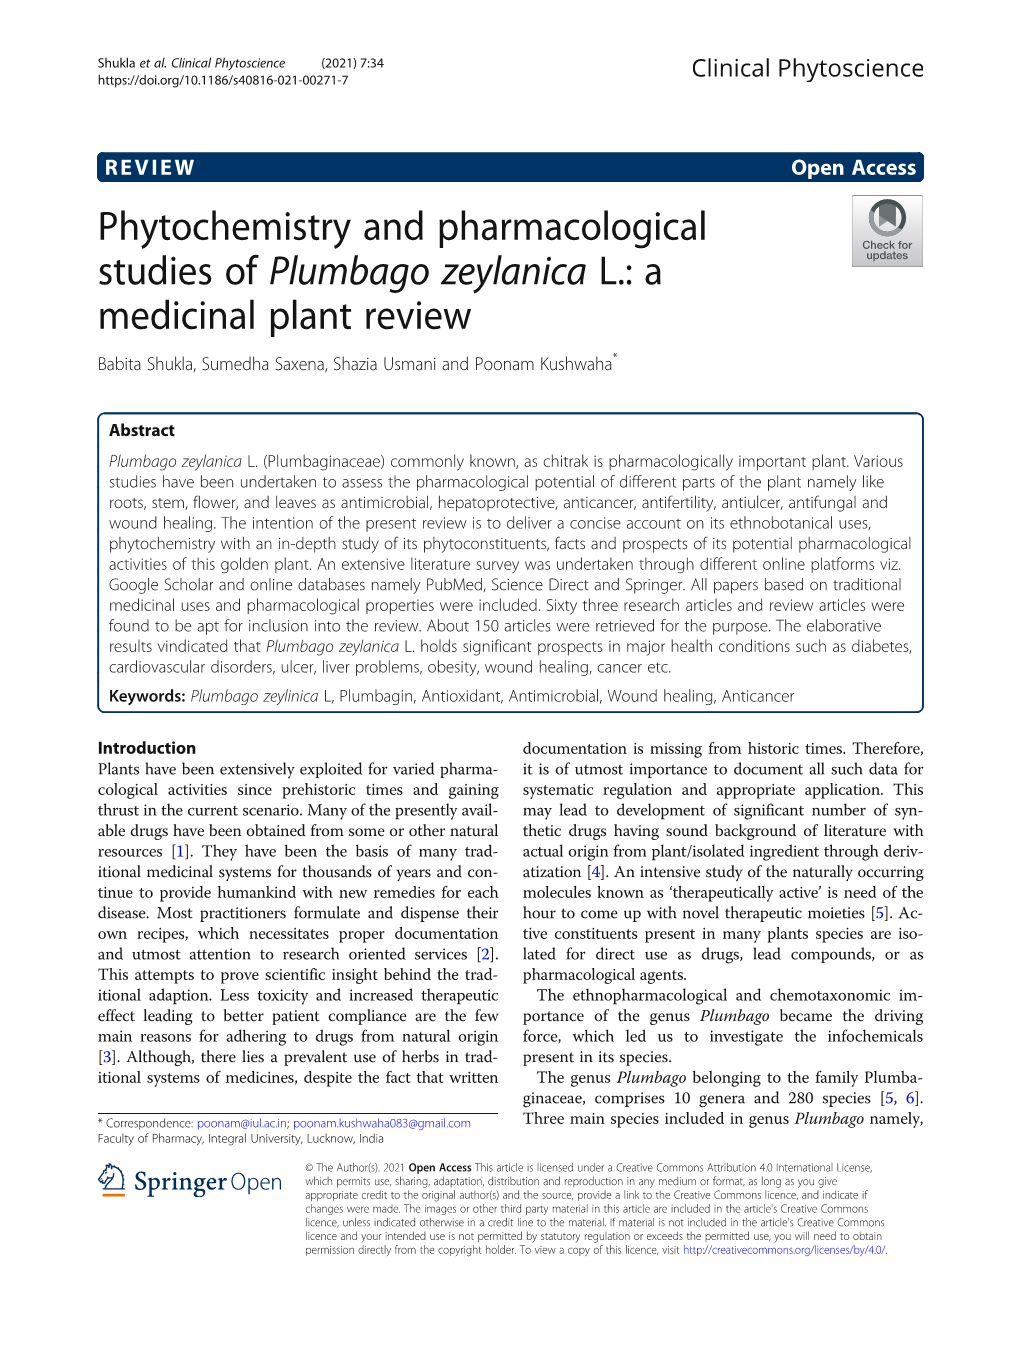 Phytochemistry and Pharmacological Studies of Plumbago Zeylanica L.: a Medicinal Plant Review Babita Shukla, Sumedha Saxena, Shazia Usmani and Poonam Kushwaha*